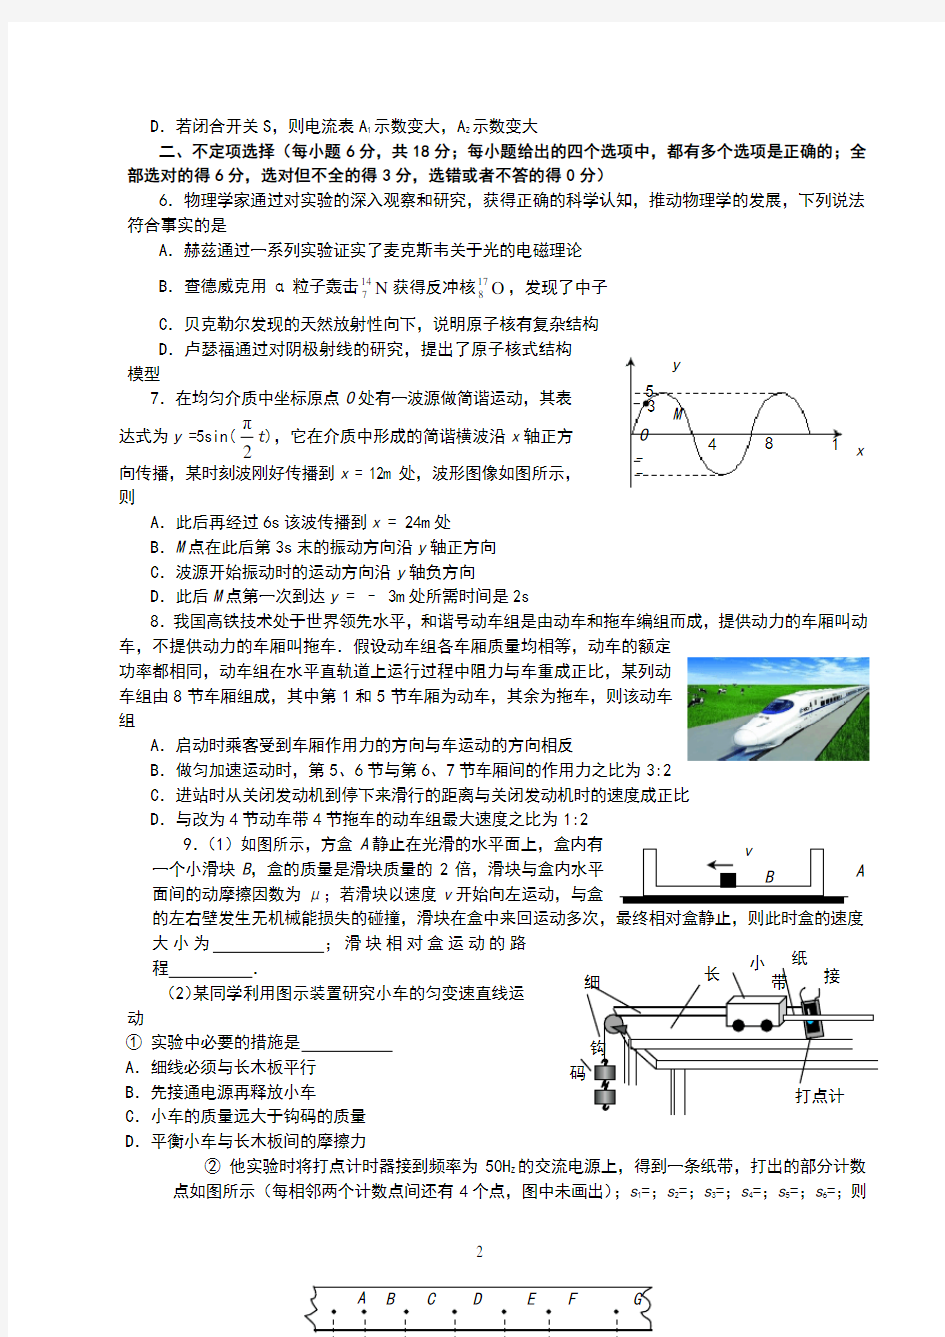 2016年高考天津卷理综物理试题及解答 (1)